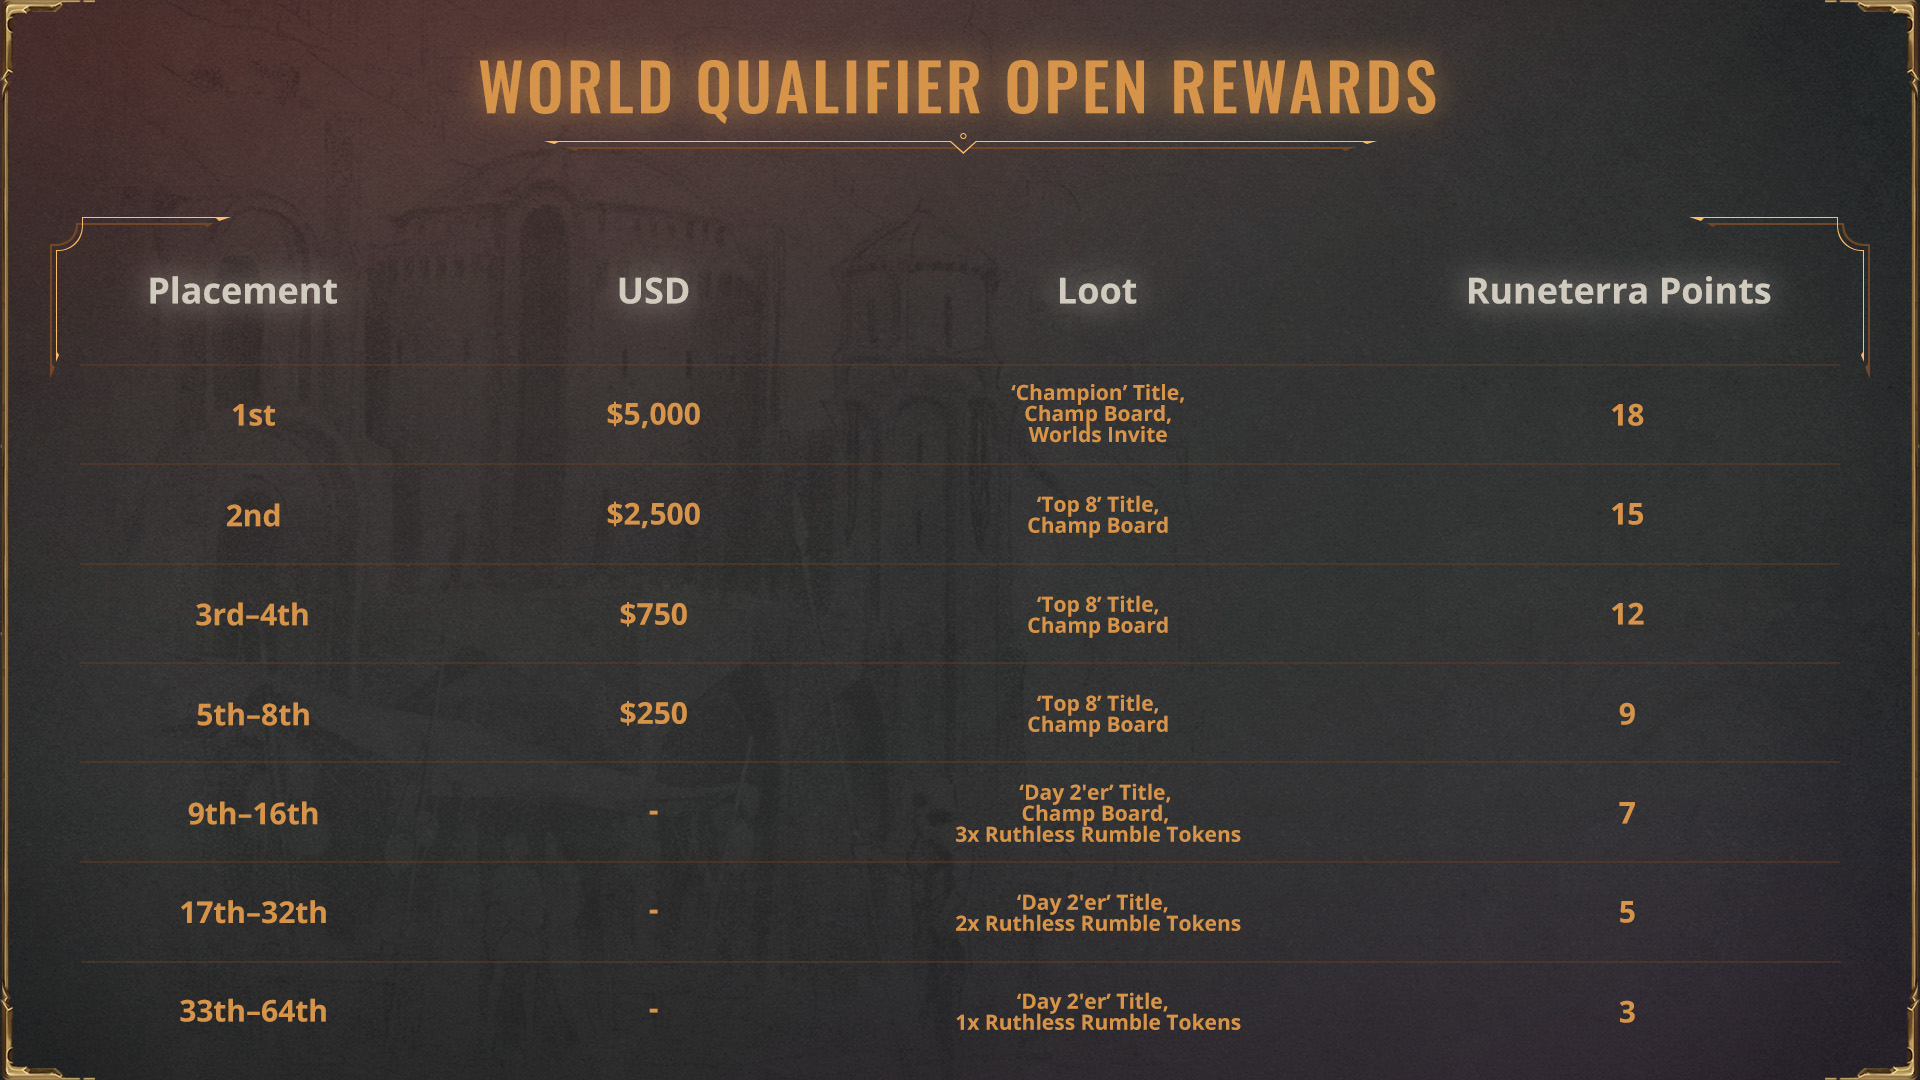 02_-World_Qualifier_Open_Rewards_16x9.jpg